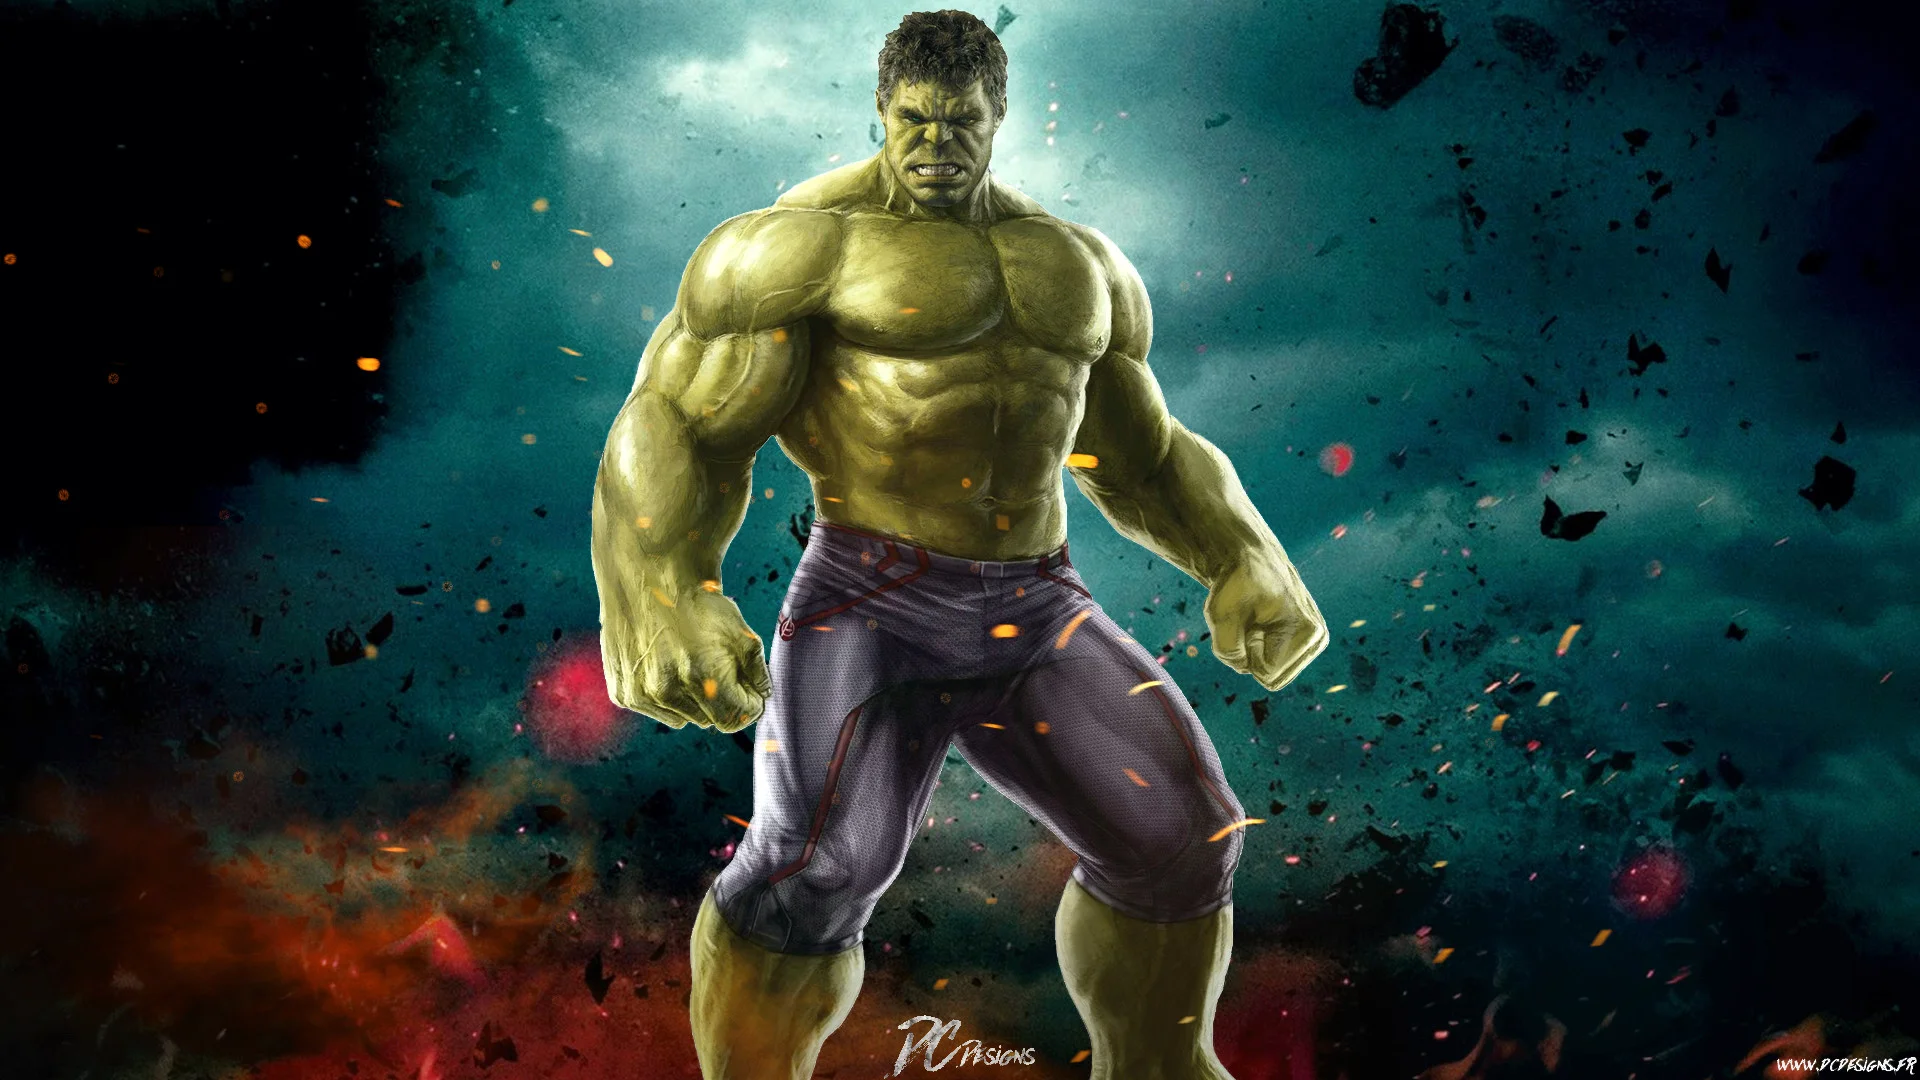 Funny Hulk Desktop Wallpaper